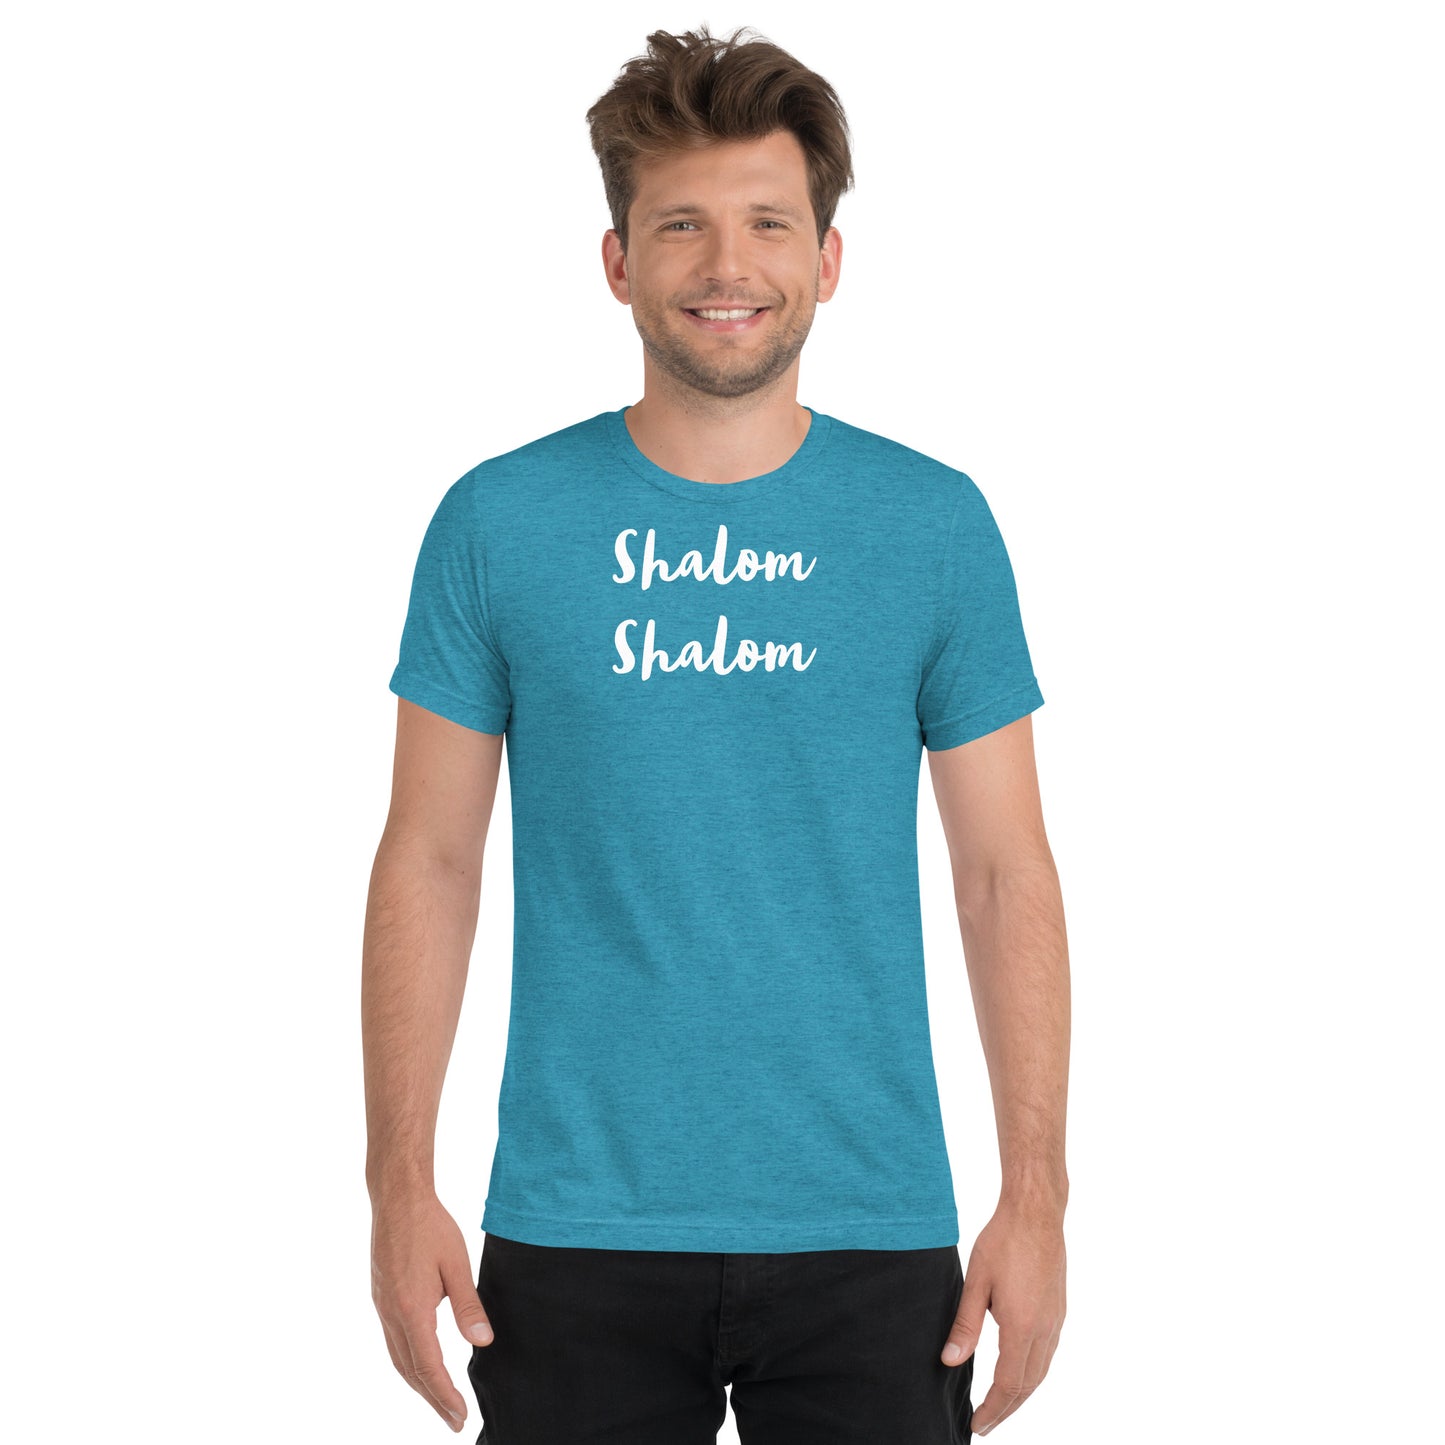 Shalom Shalom Tee Shirt     XS - 3XL